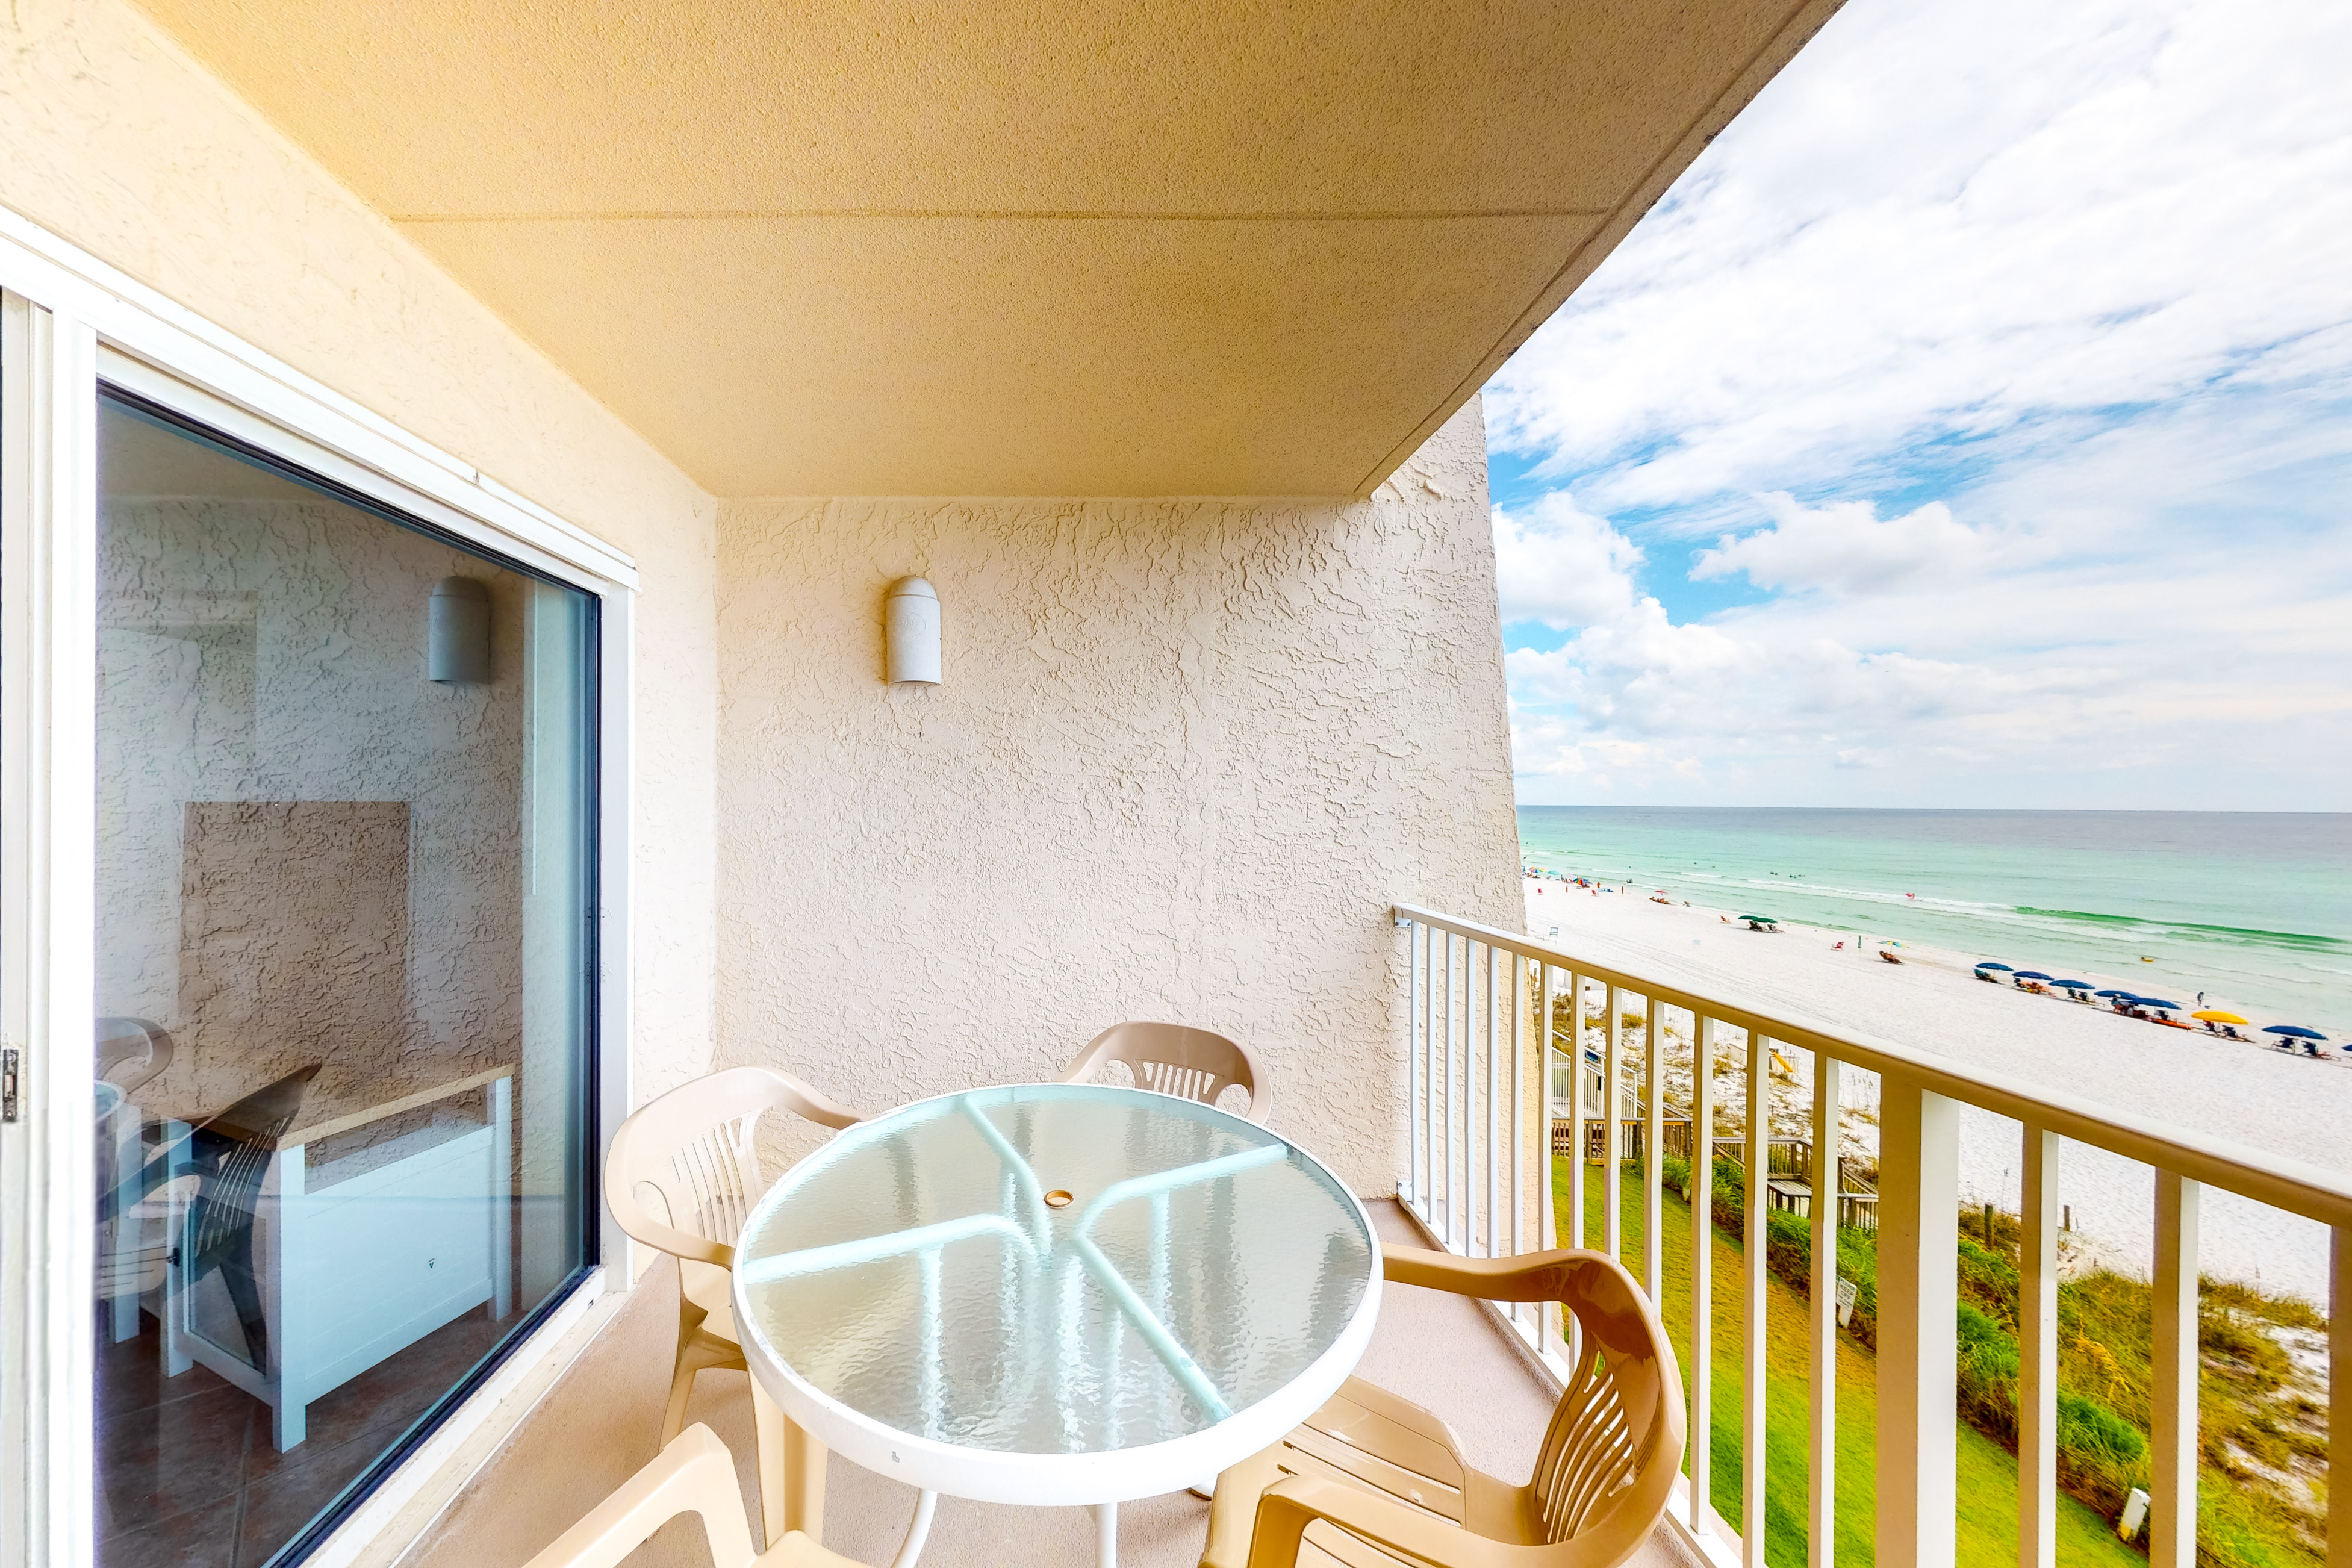 Beach House B403 Condo rental in Beach House Condos Destin in Destin Florida - #13